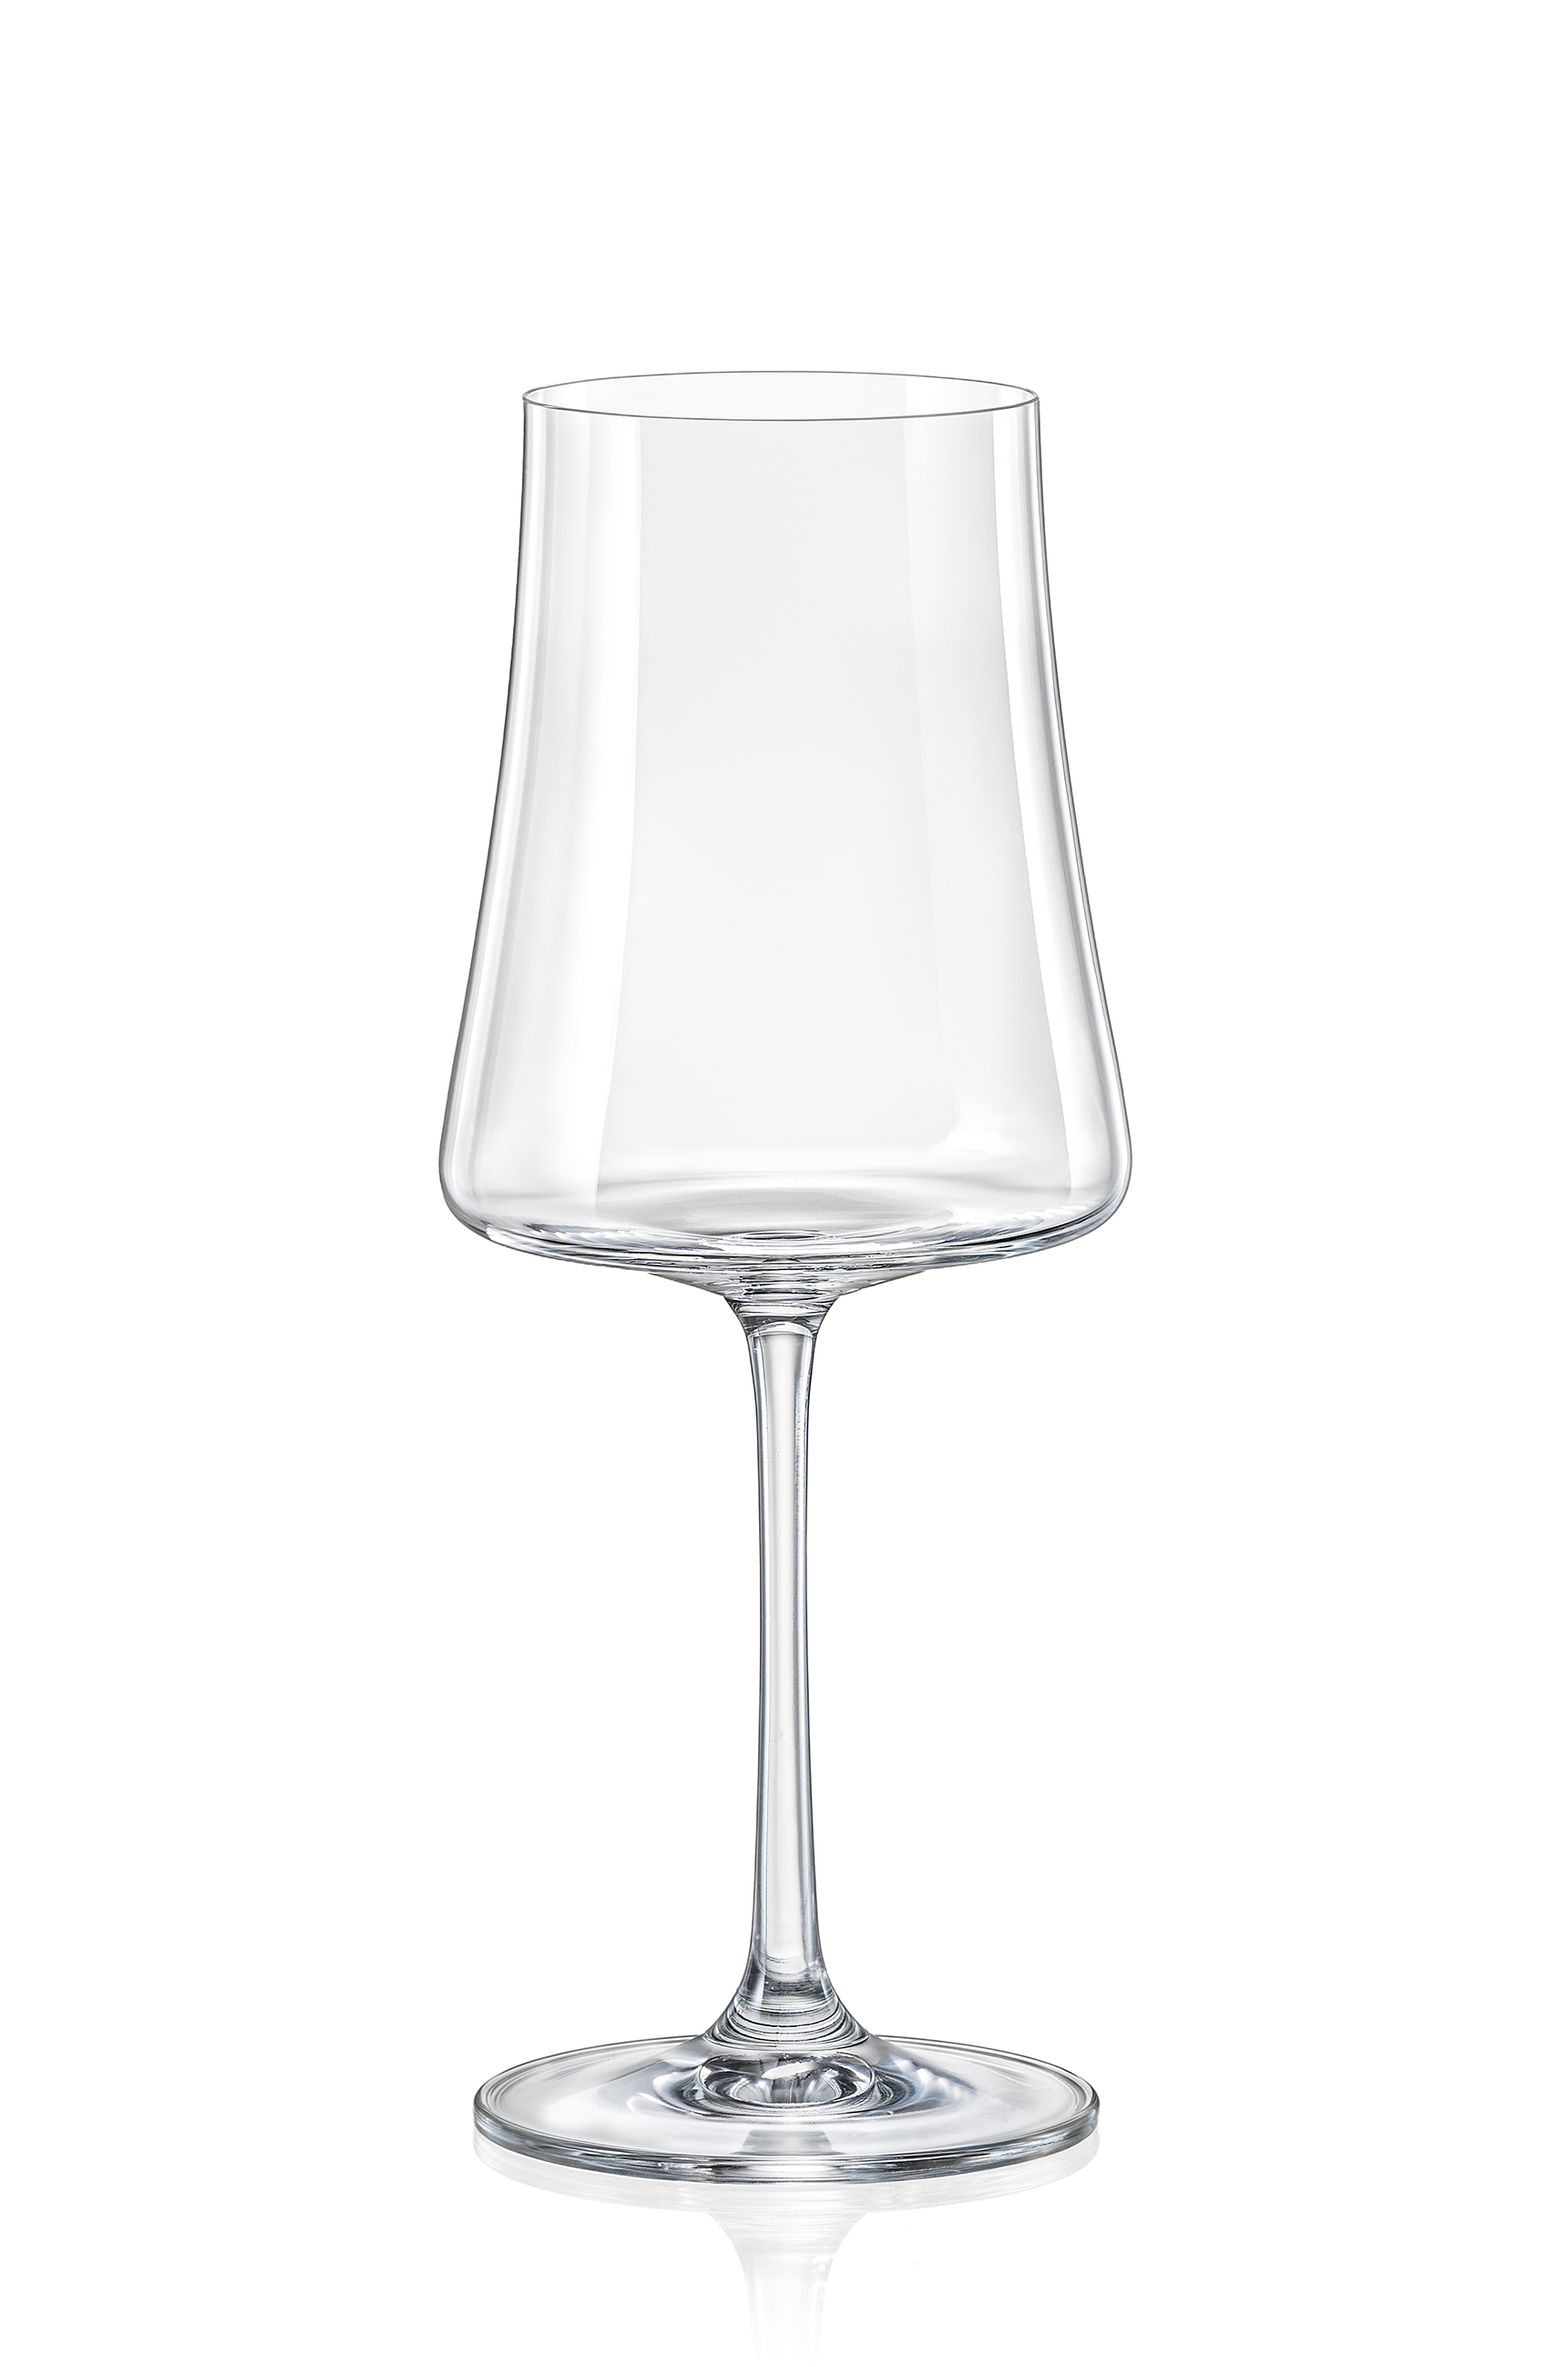 Ποτήρι Κρασιού Κρυστάλλινο Bohemia Xtra 360ml CLX40862360 (Σετ 6 Τεμάχια) (Υλικό: Κρύσταλλο, Χρώμα: Διάφανο , Μέγεθος: Κολωνάτο) – Κρύσταλλα Βοημίας – CLX40862360